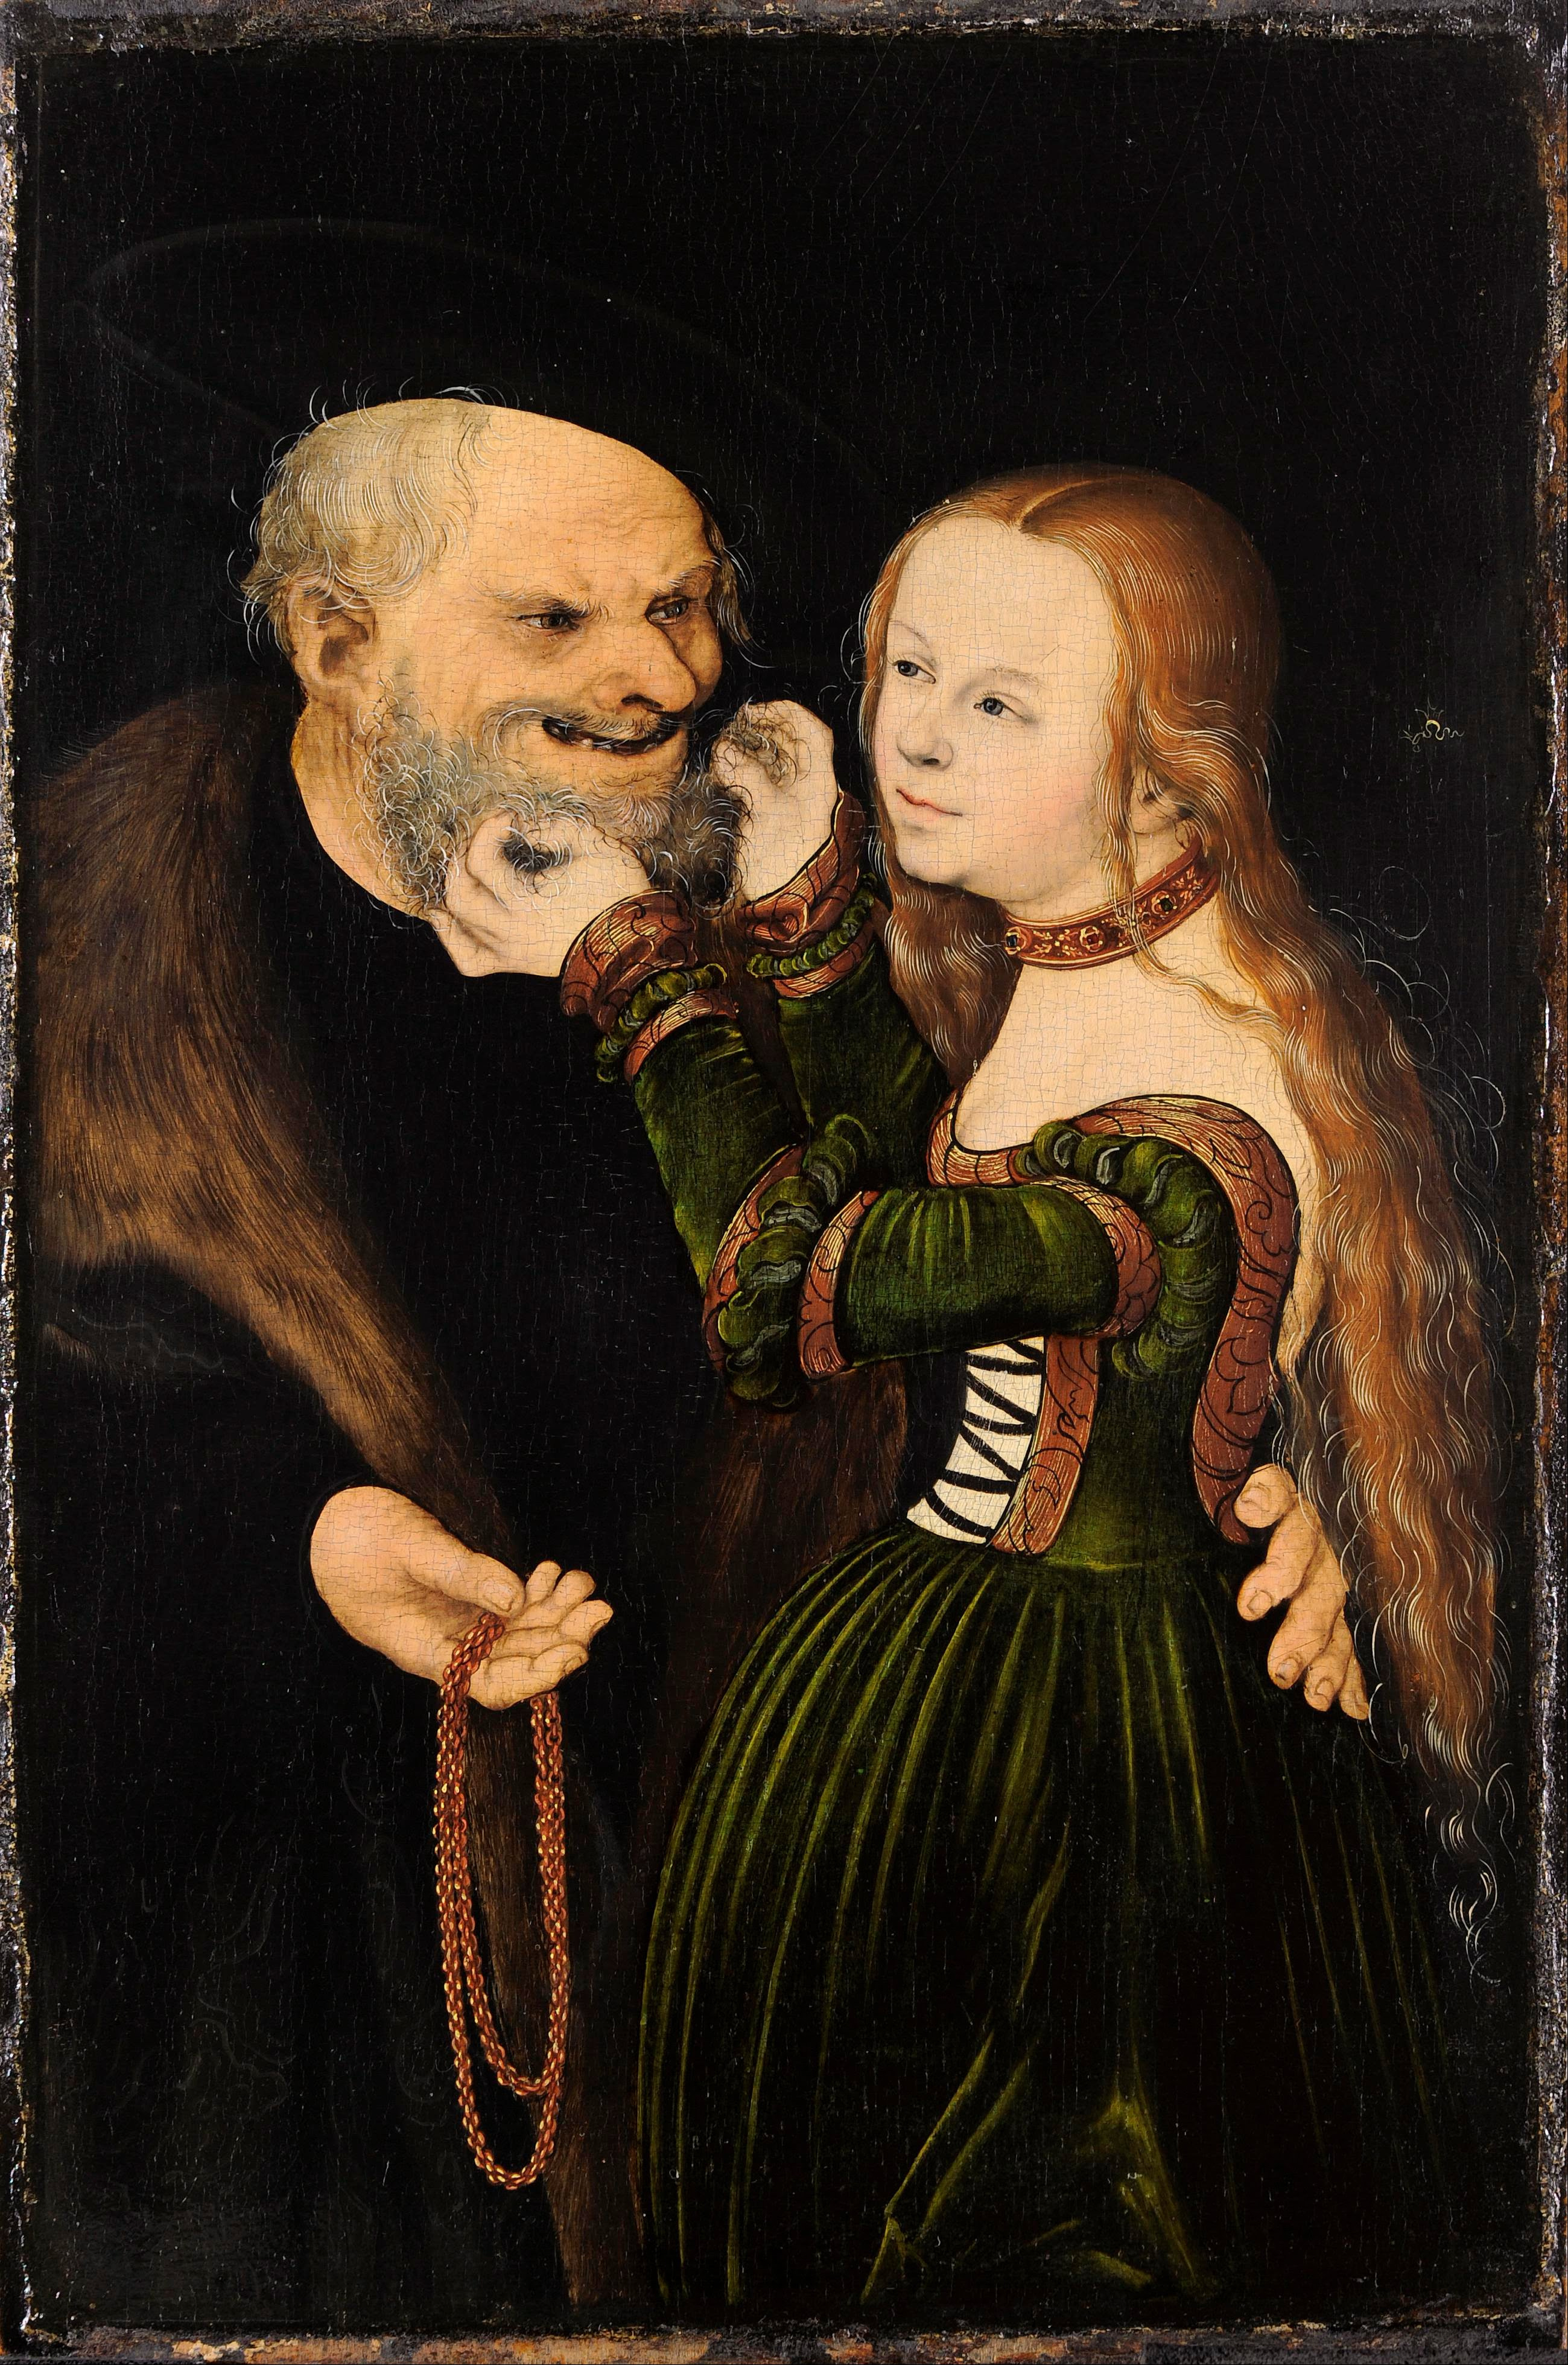 Das ungleiche Paar (der alte verliebte Mann) by Lucas Cranach the Elder - ca. 1530 - 25,7 x 38,8 cm Museum Kunstpalast